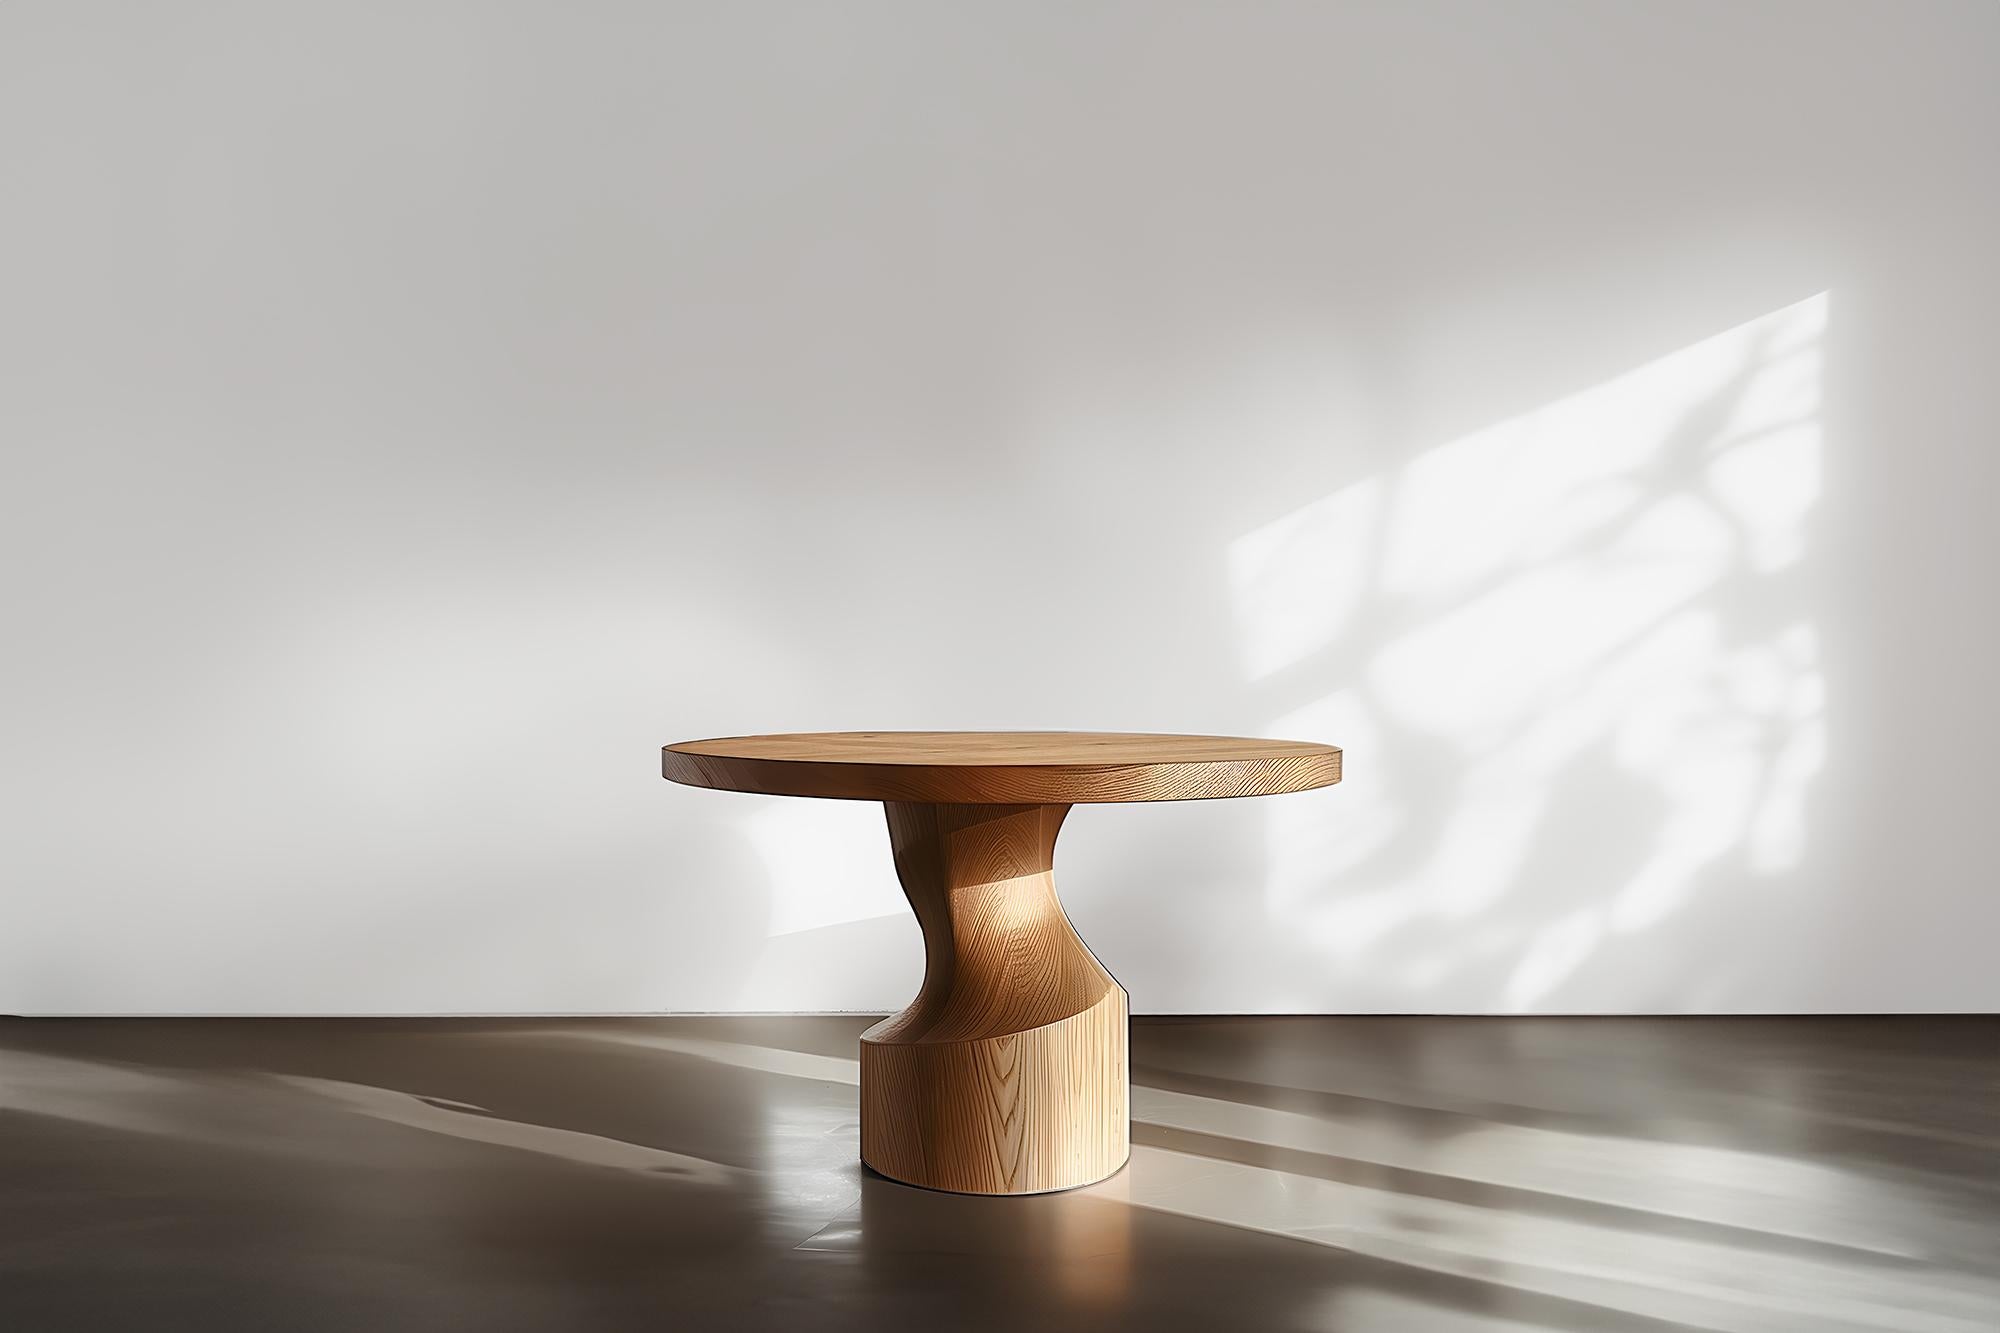 Socle n°08, tables de conférence par NONO, symétrie de bois massif

--

Voici la 